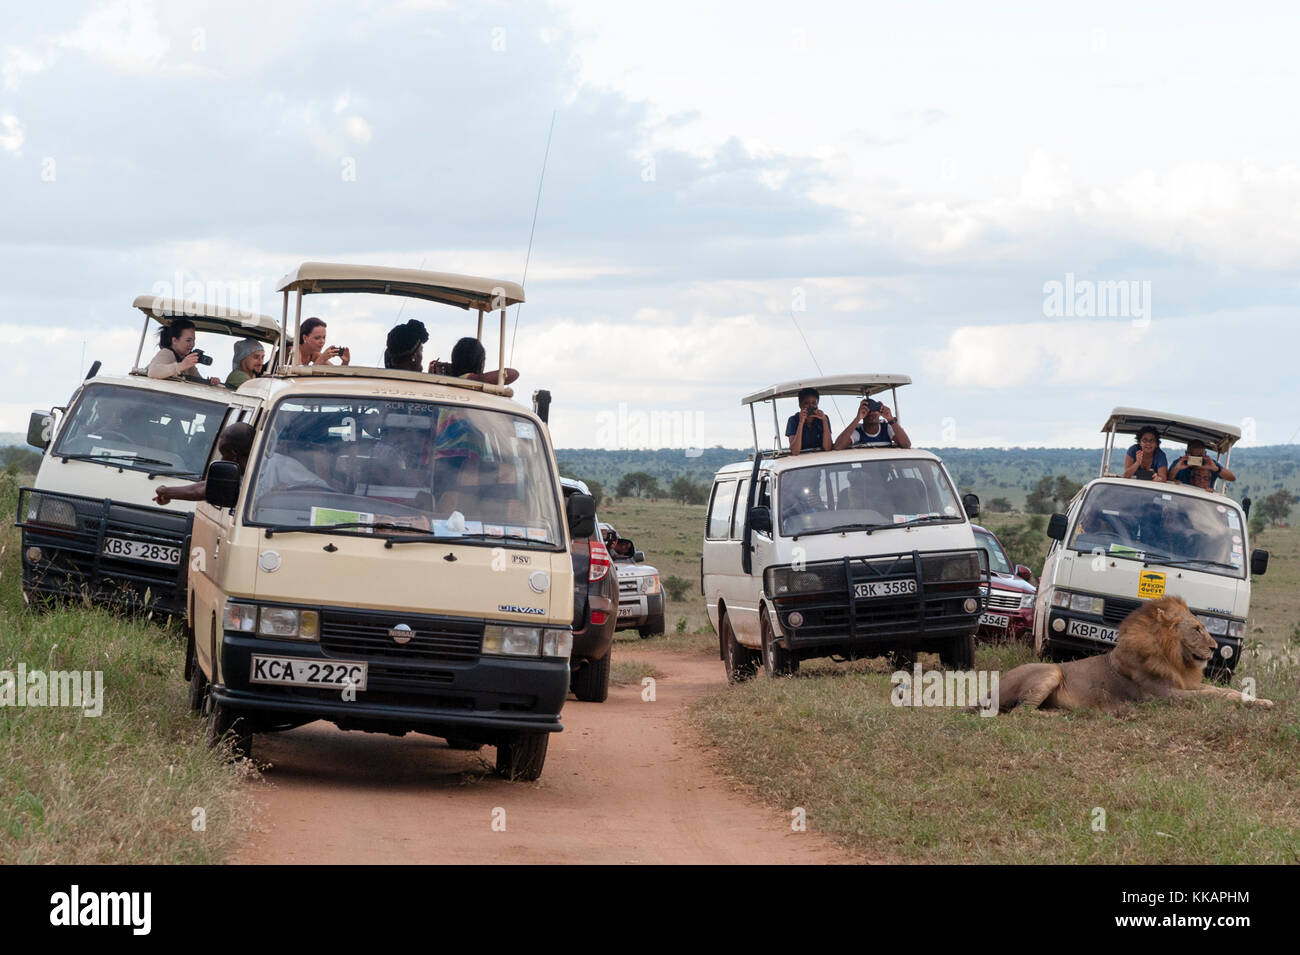 Les touristes en minibus à prendre des photos d'un lion (Panthera leo) à proximité avec les téléphones mobiles, Tsavo, Kenya, Afrique de l'Est, l'Afrique Banque D'Images